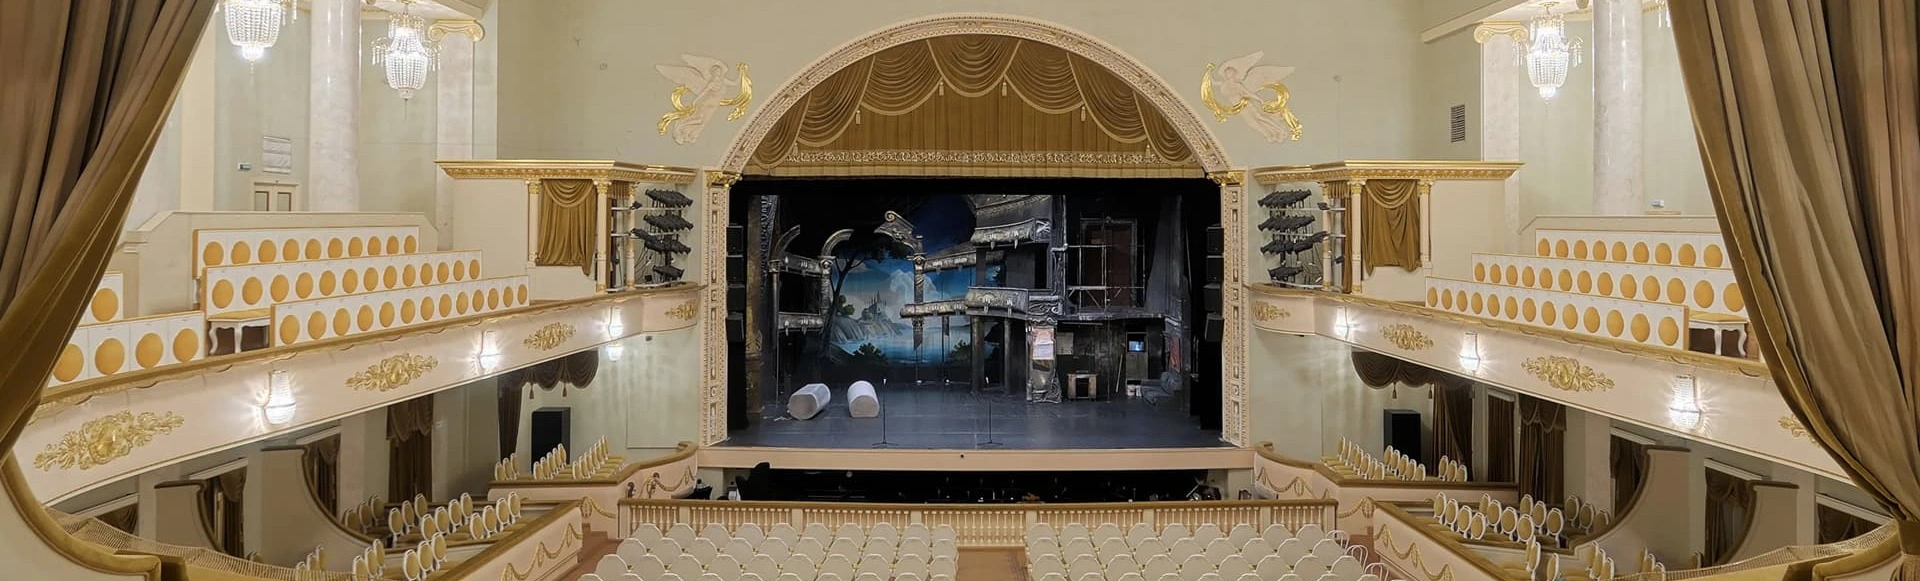 Театр Музкомедии примет участие в театральных фестивалях